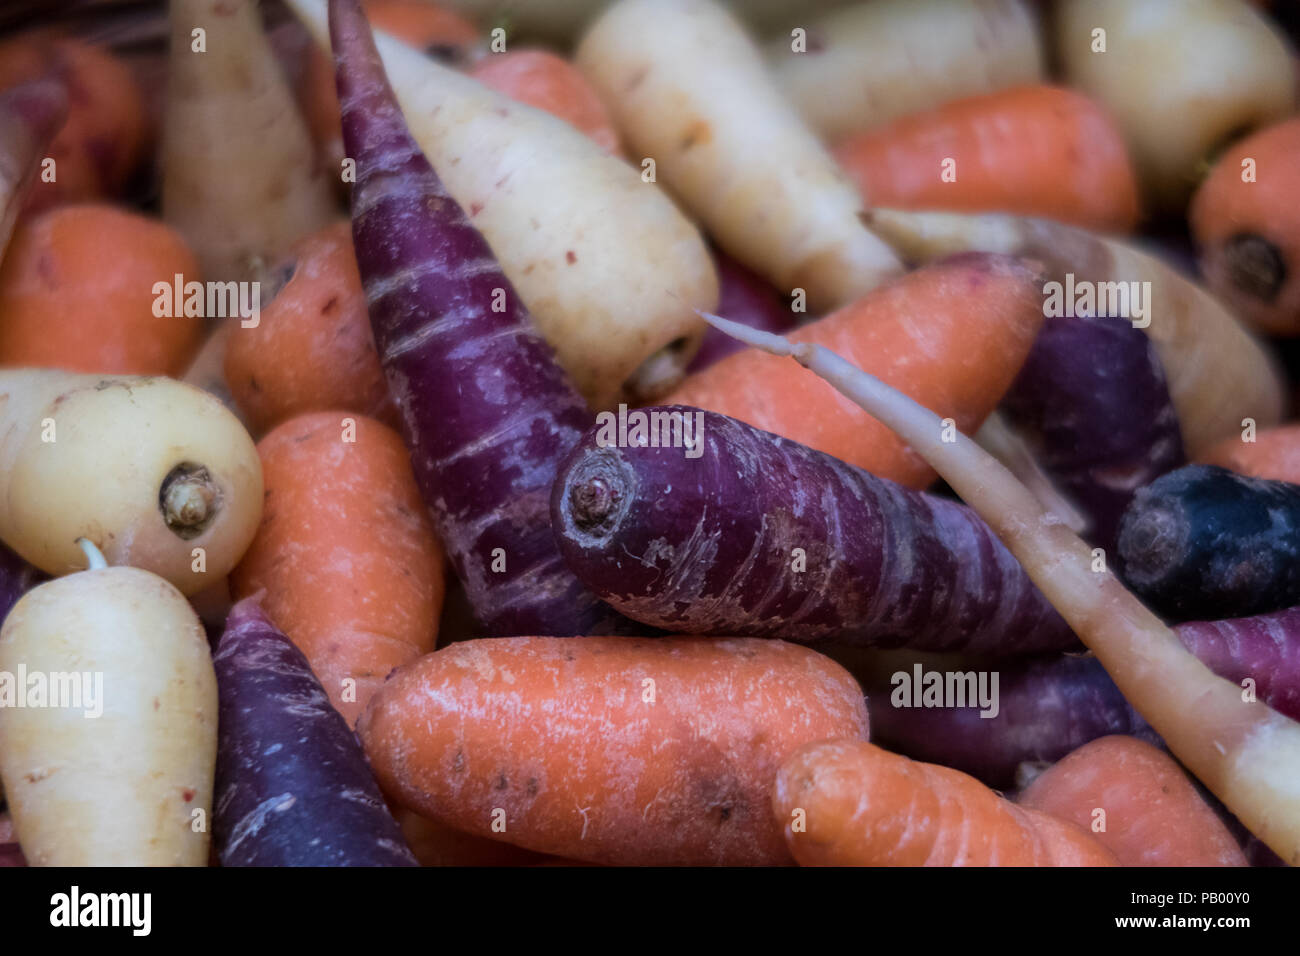 Rainbow carote sulla vendita in London Borough Market, REGNO UNITO Foto Stock